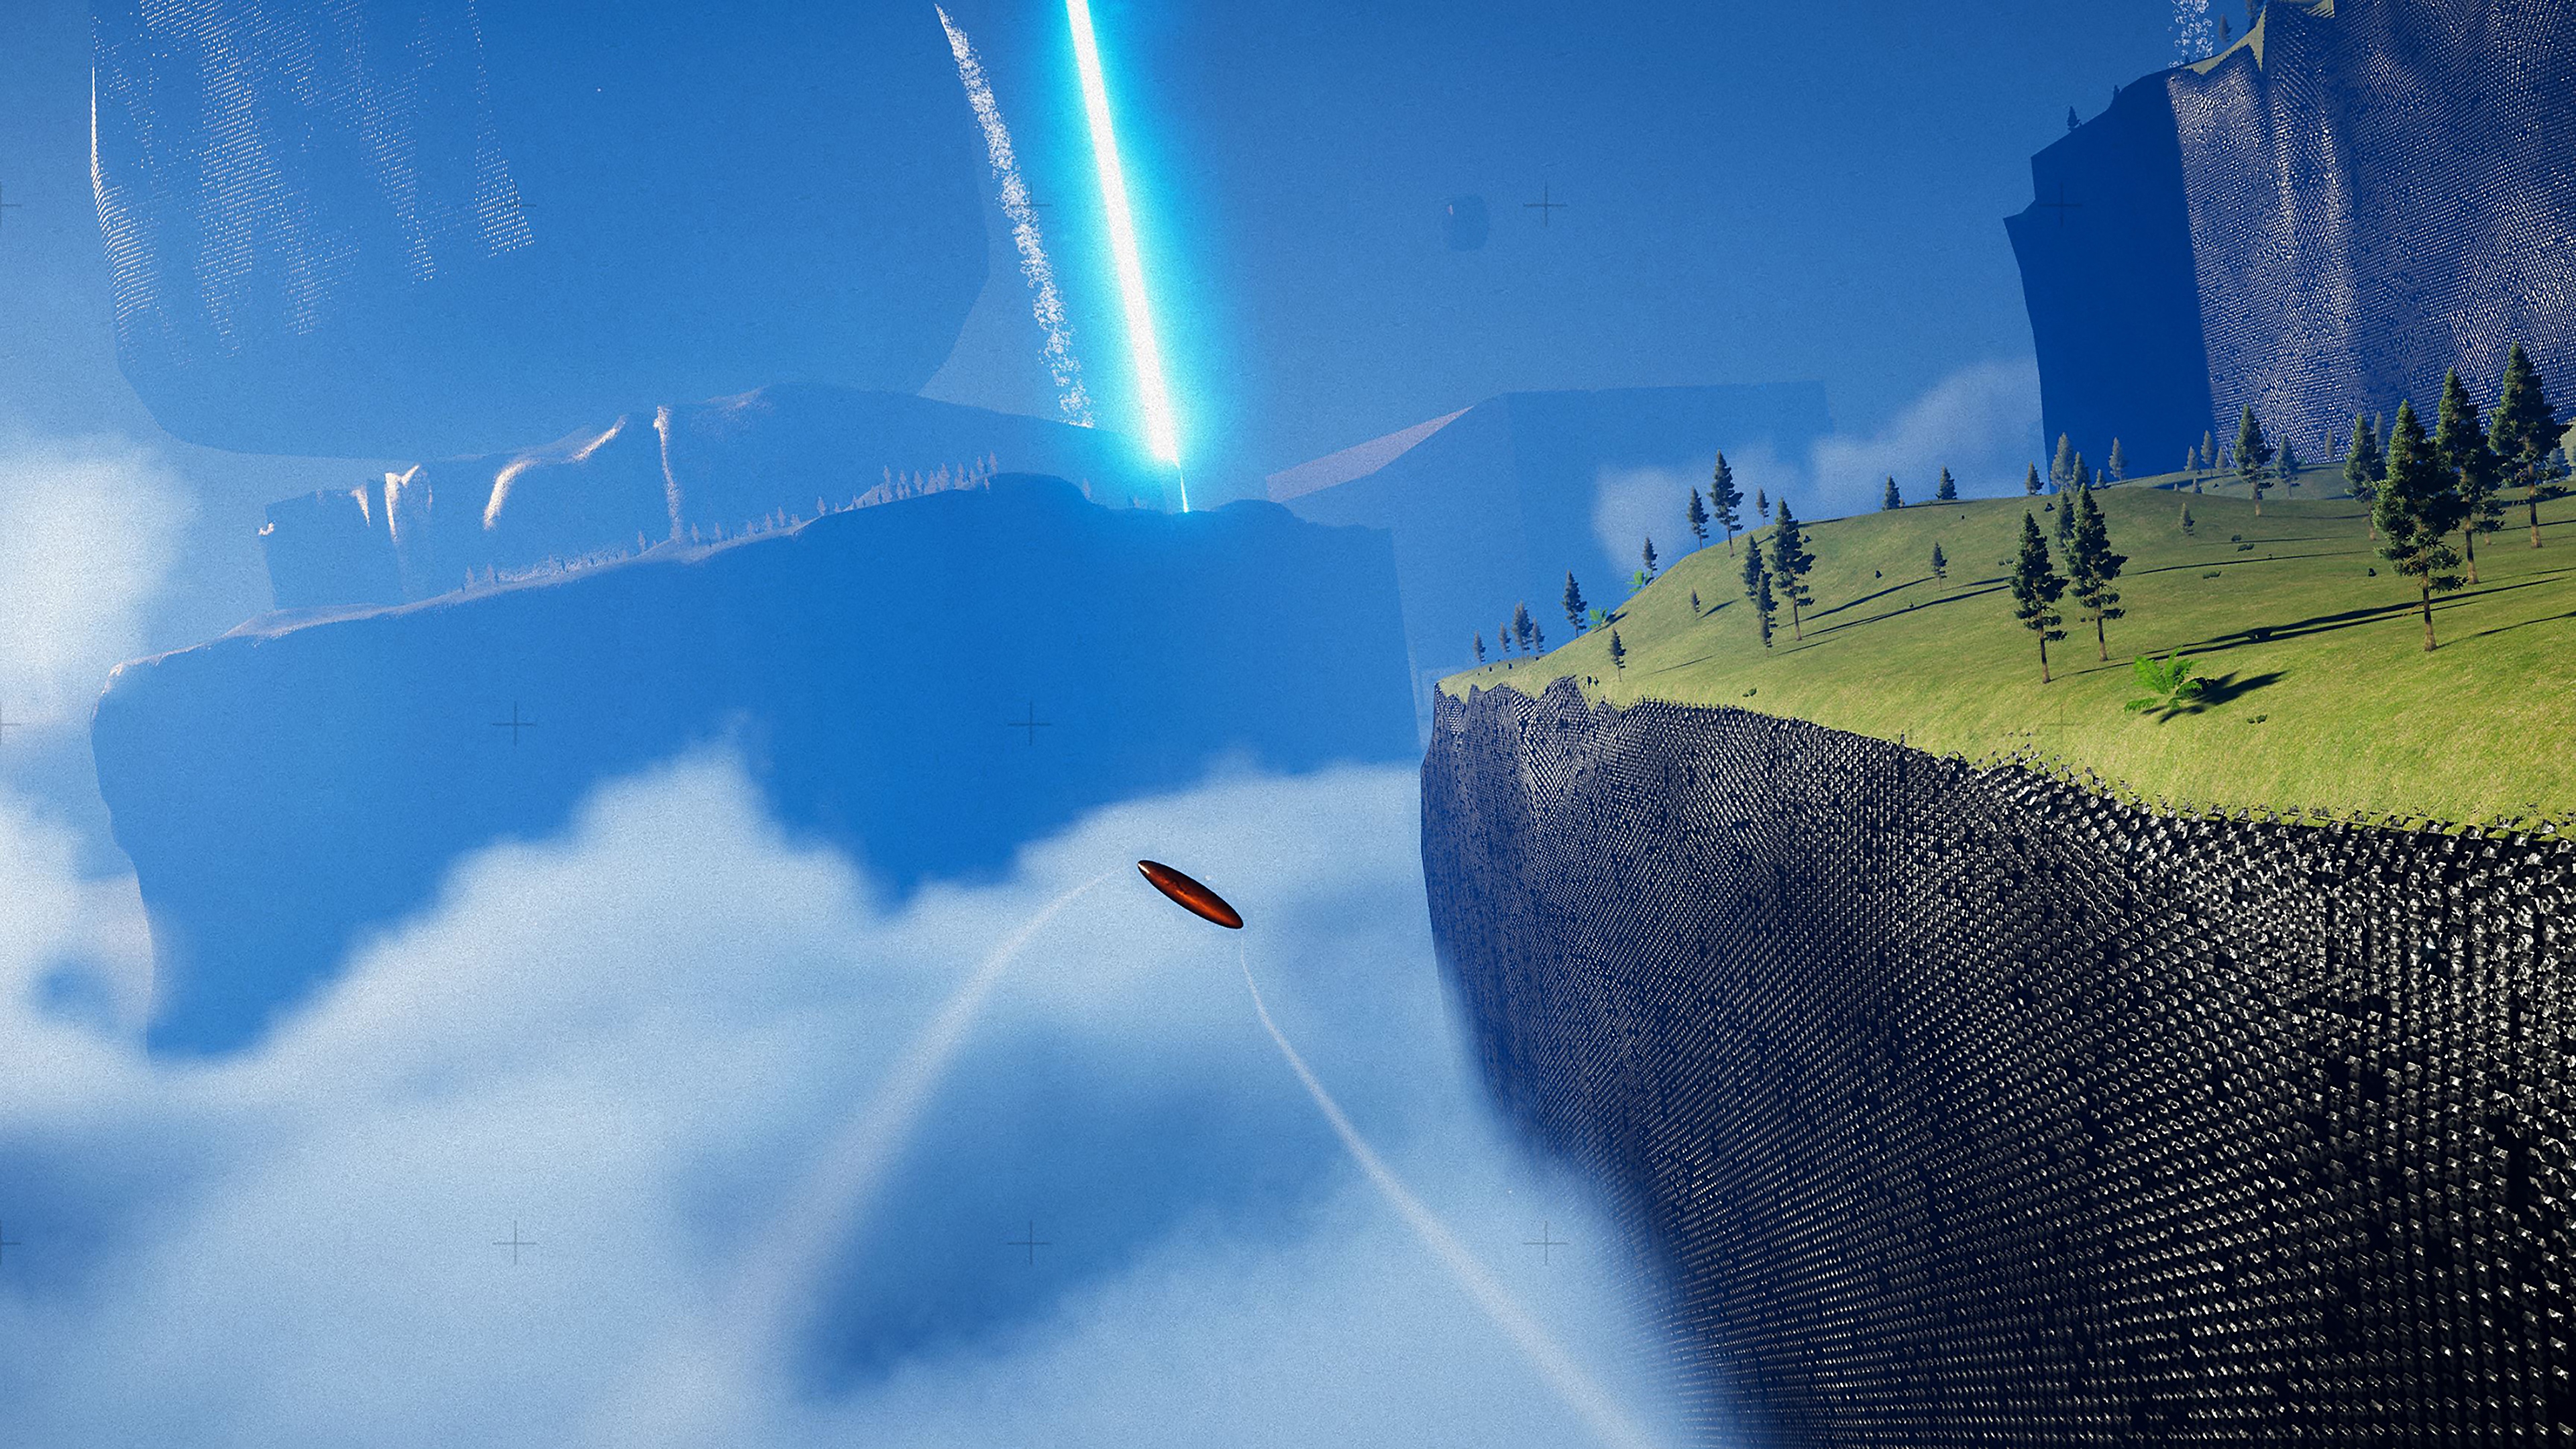 Exo One – zrzut ekranu przedstawiający latający obiekt w pobliżu krawędzi klifu